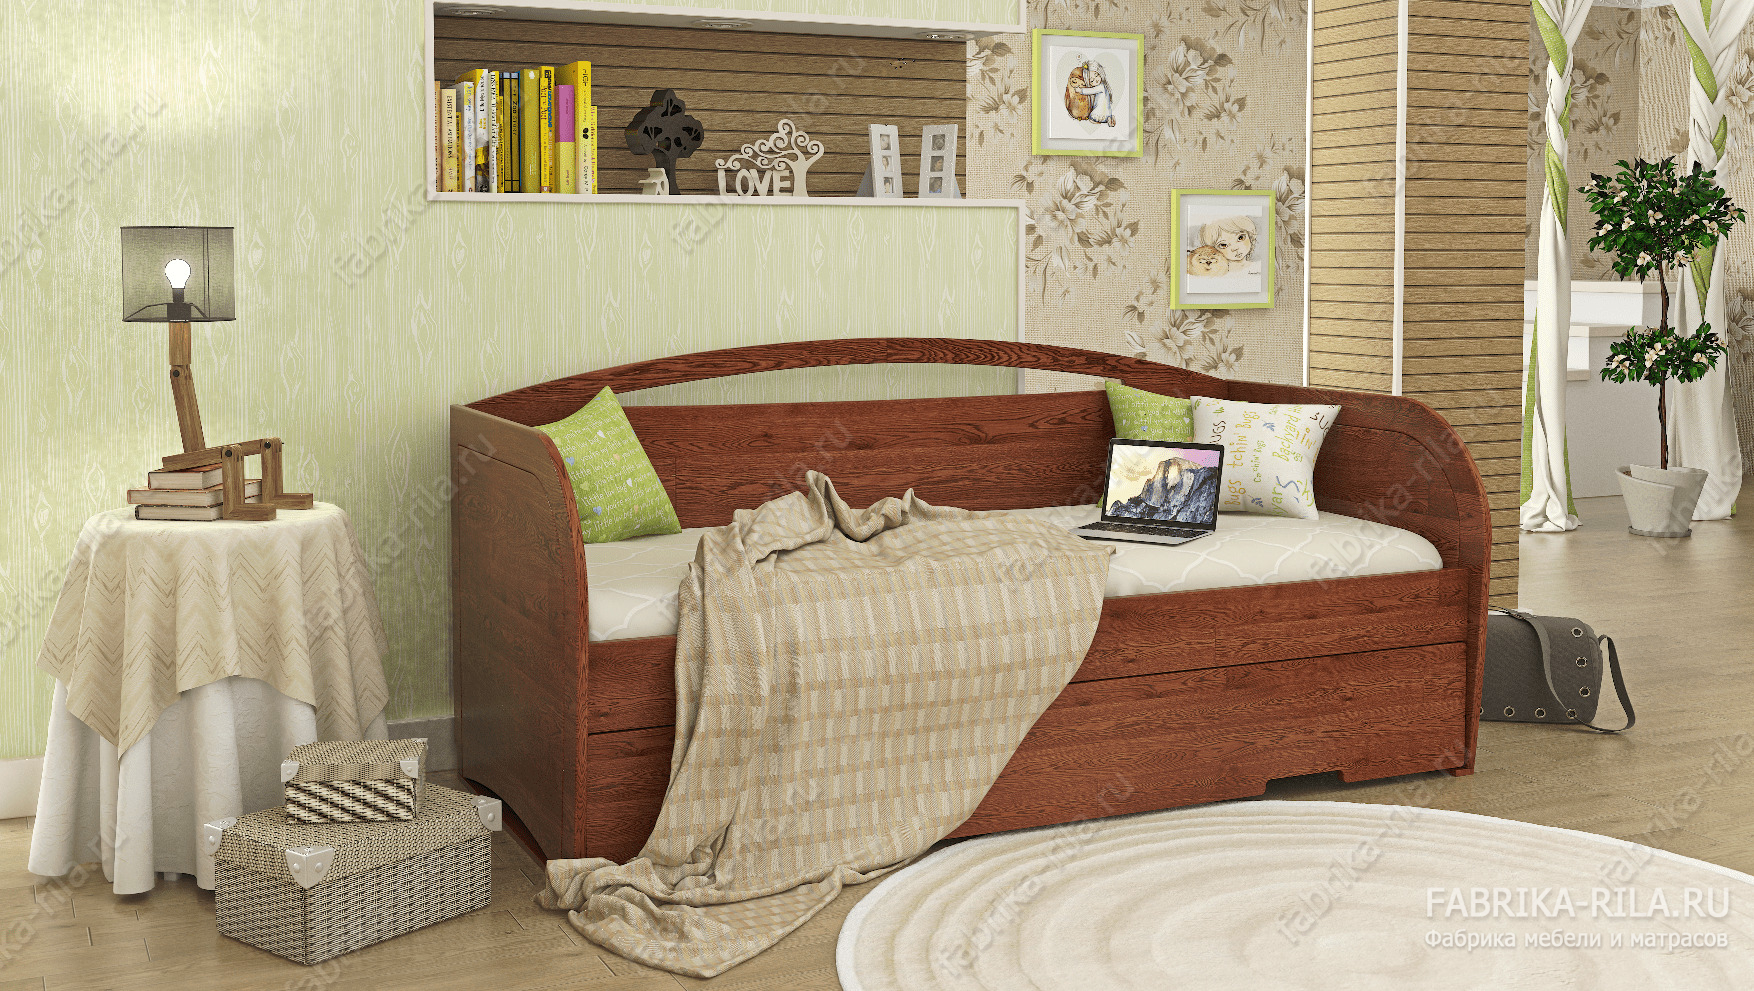 Кровать детская Duet— 80x190 см. из сосны